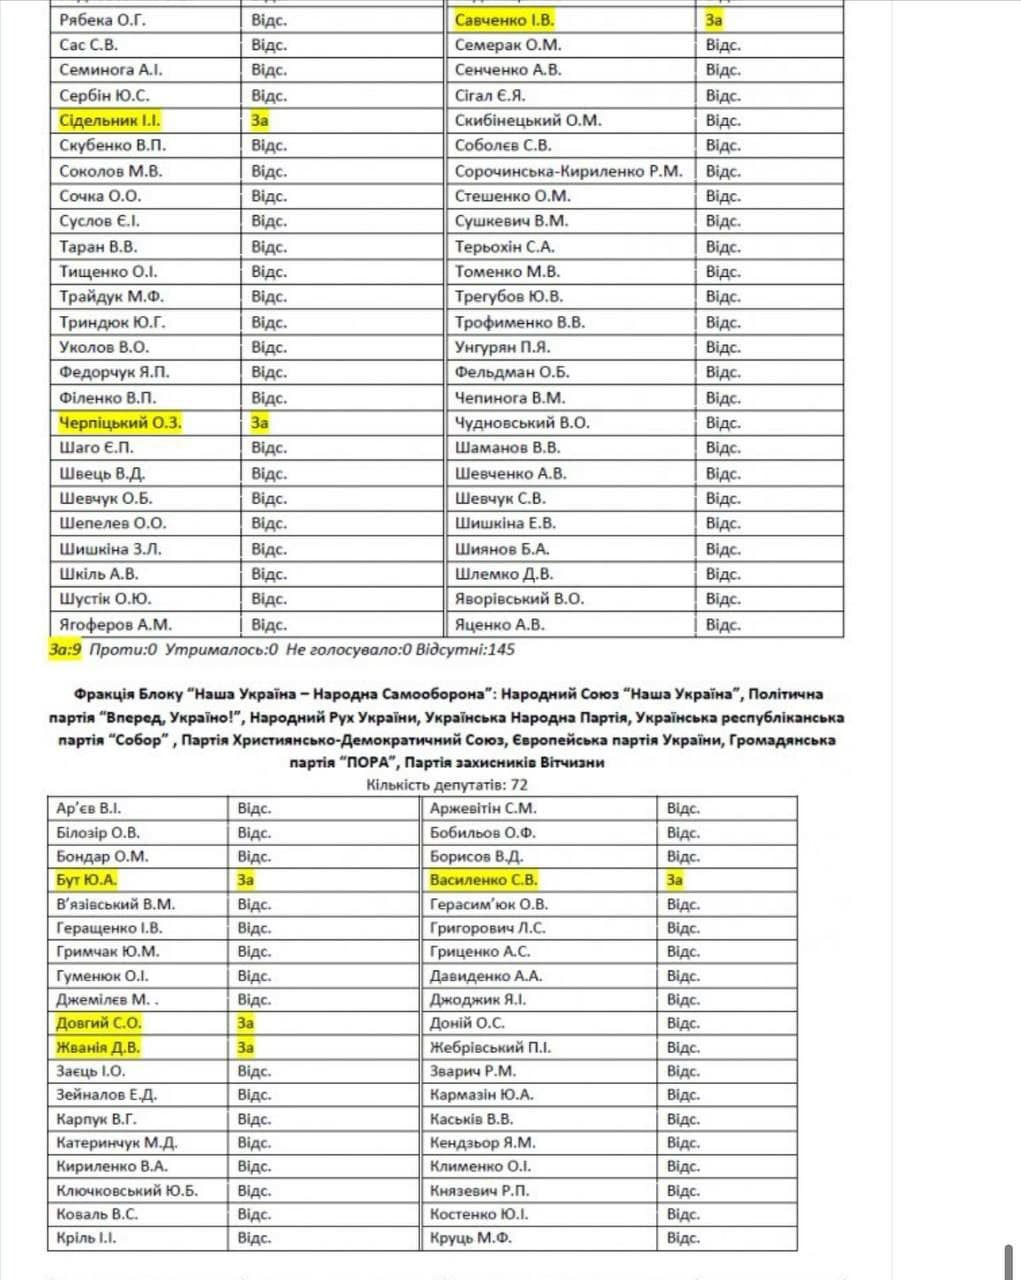 Опубликован список нардепов, которых СБУ проверит из-за Харьковских соглашений - 4 - изображение